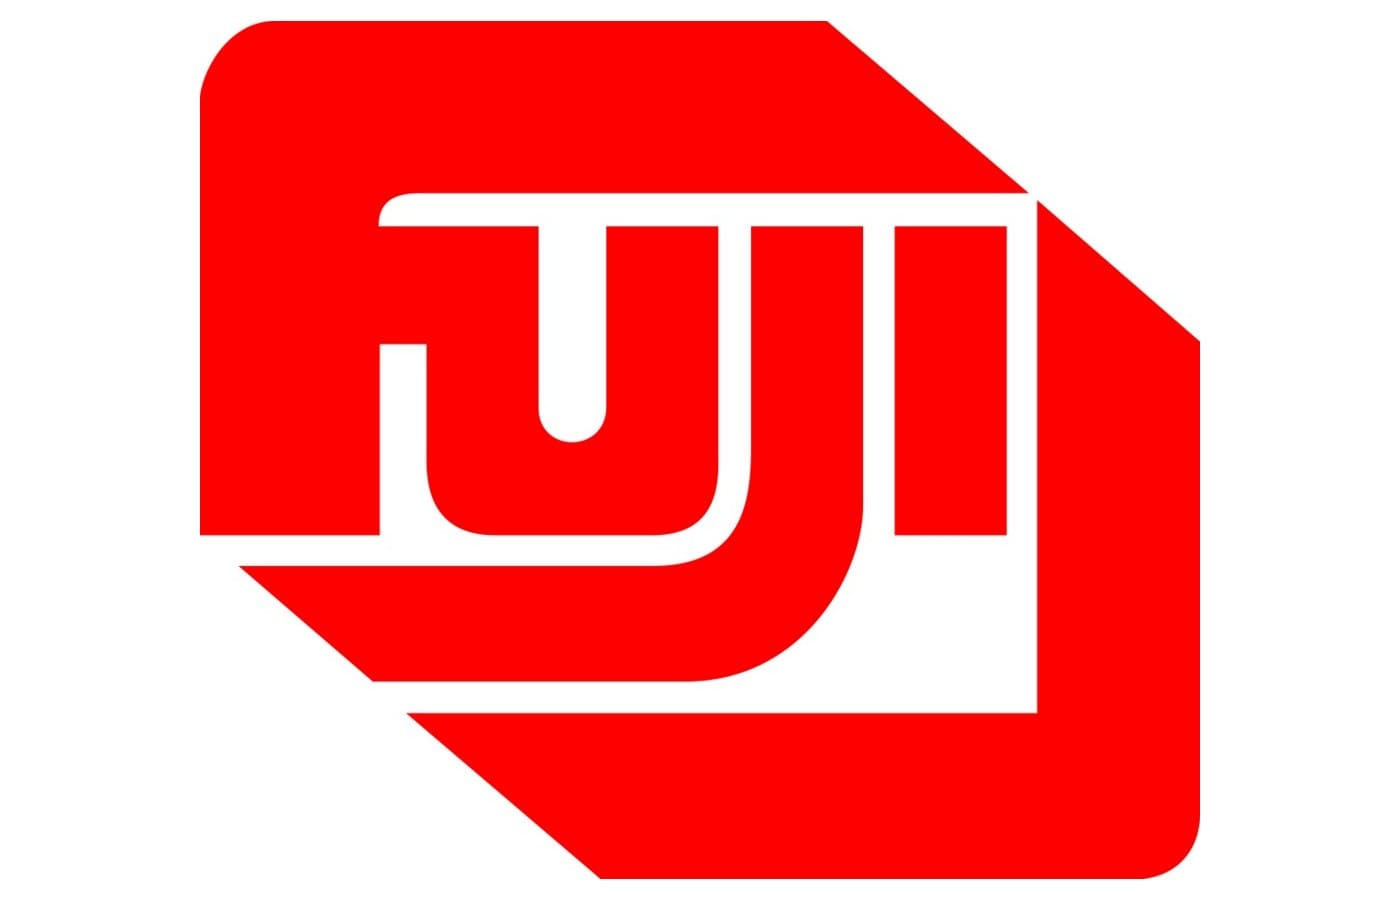 Fujifilm-Logo-1980